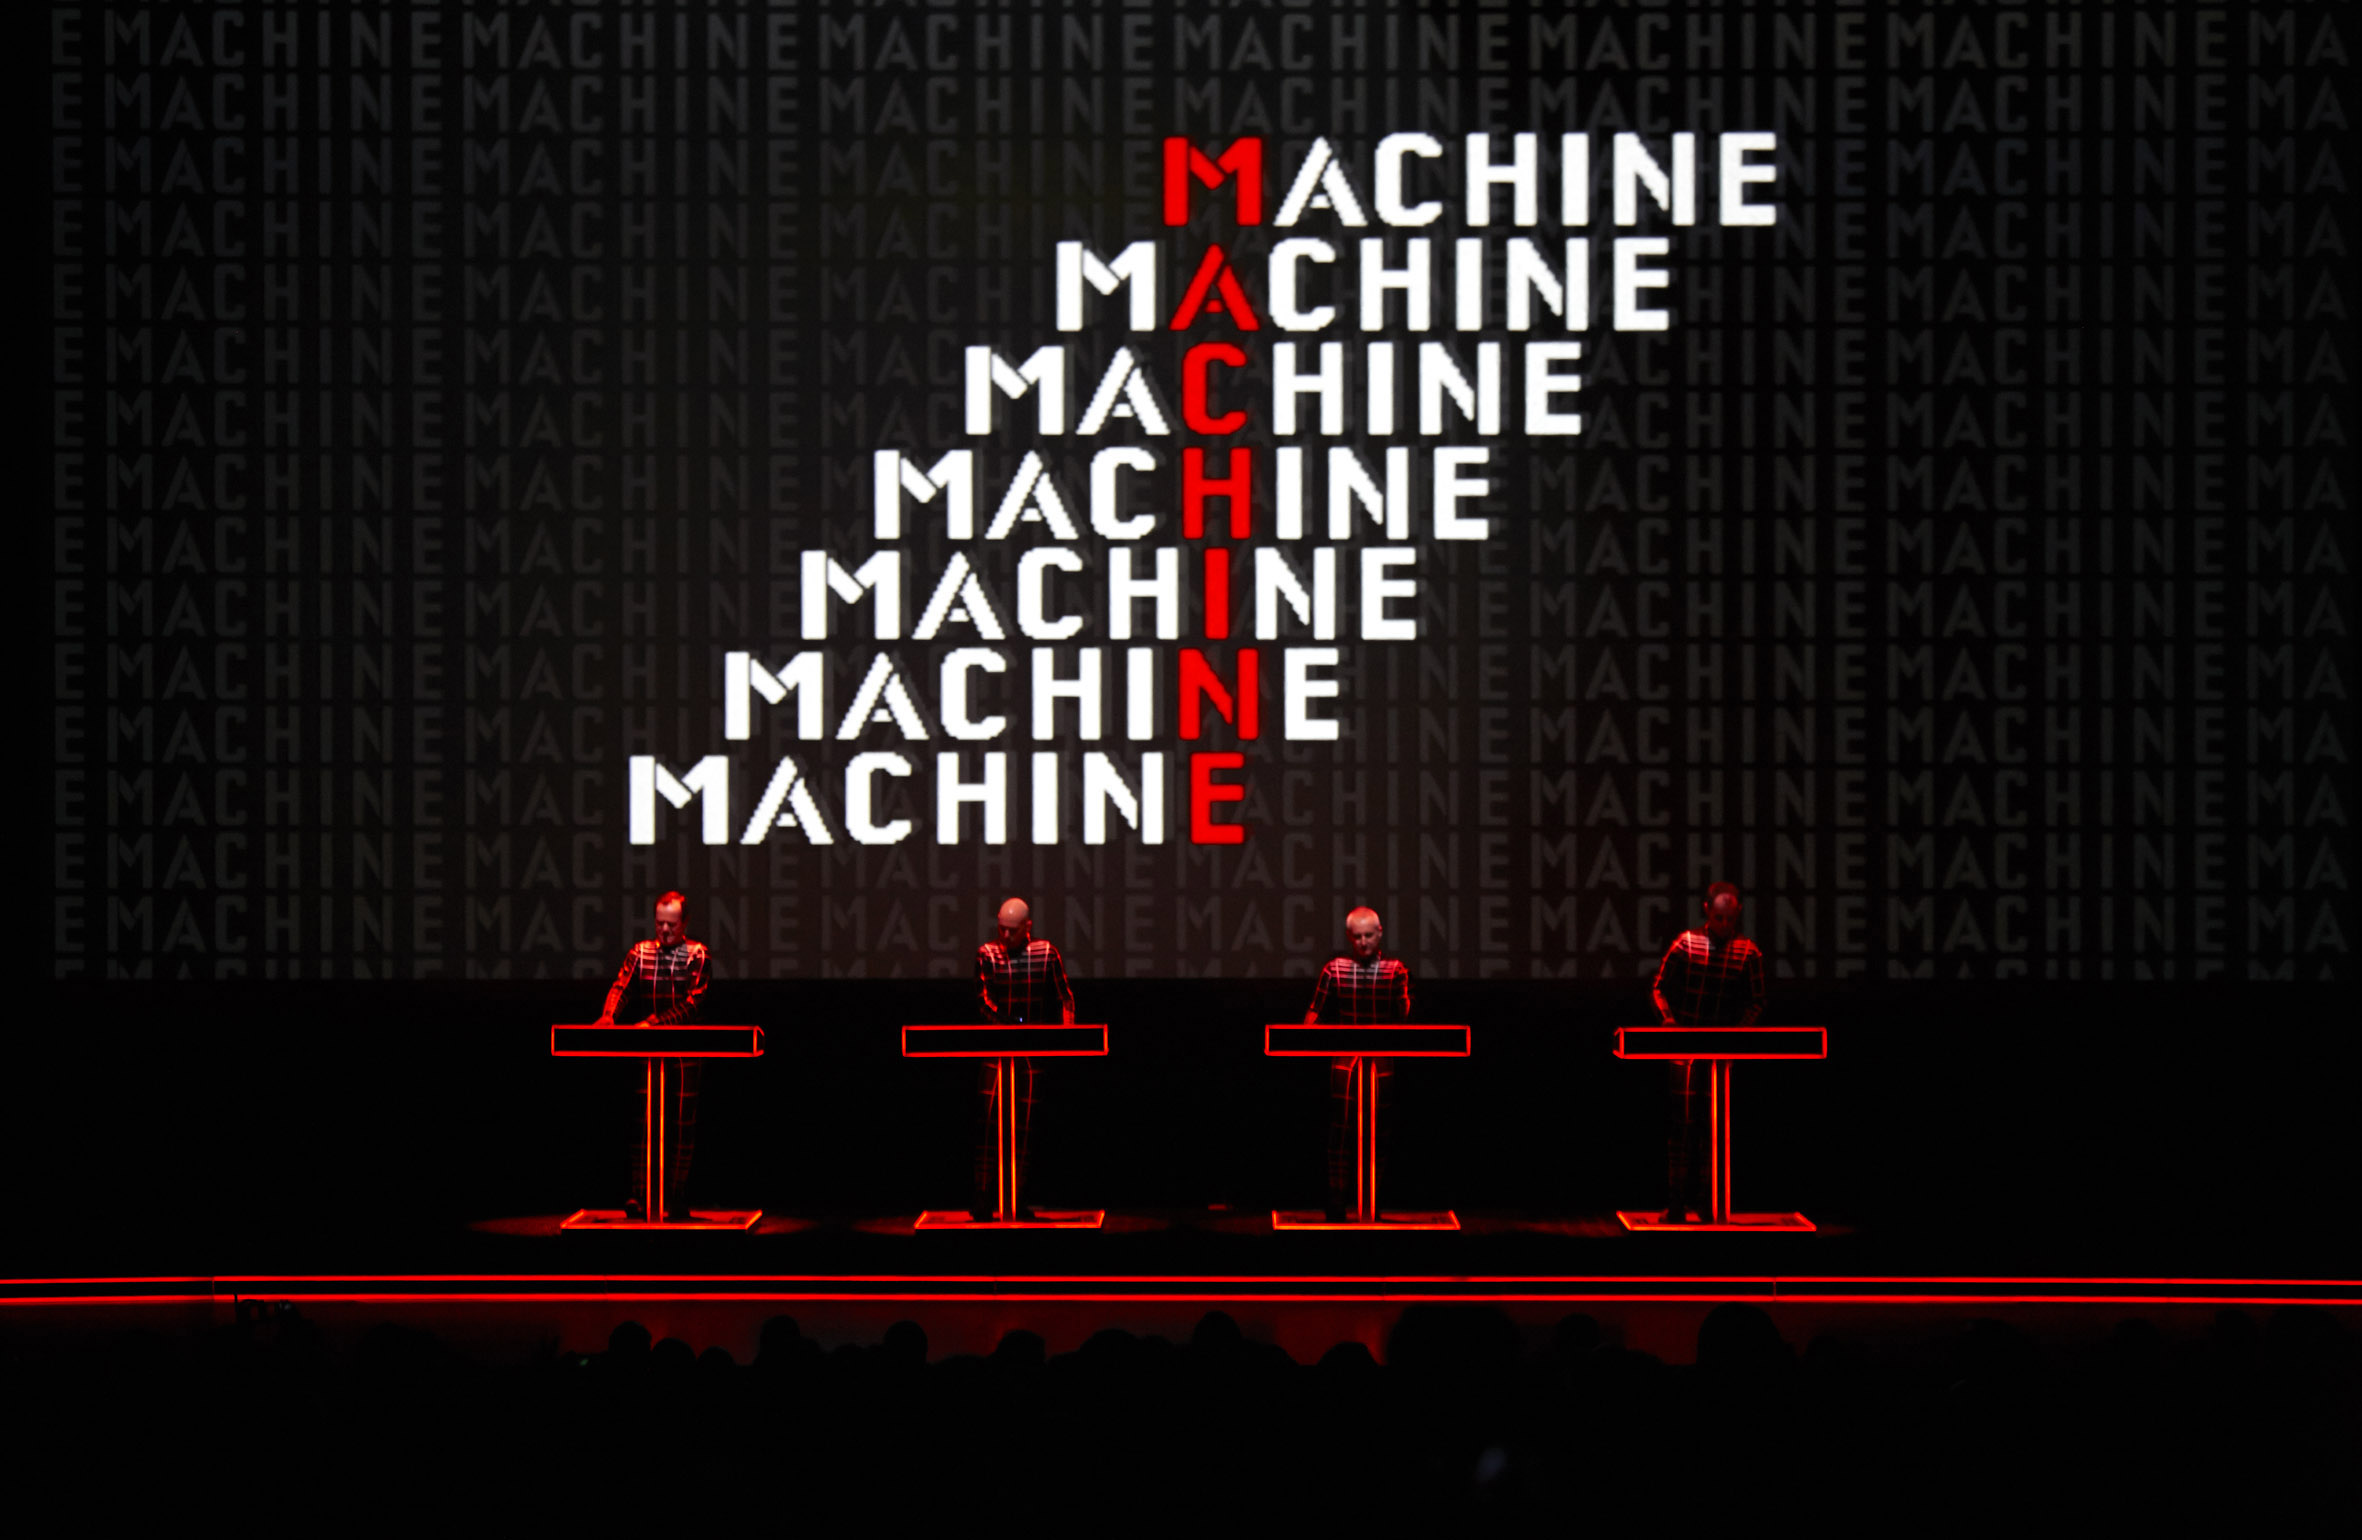 Kraftwerk Der Katalog – 1 2 3 4 5 6 7 8 Die Mensch-Maschine 3D Konzert Tate Modern, London 2013 © Peter Boettcher Courtesy Sprüth Magers